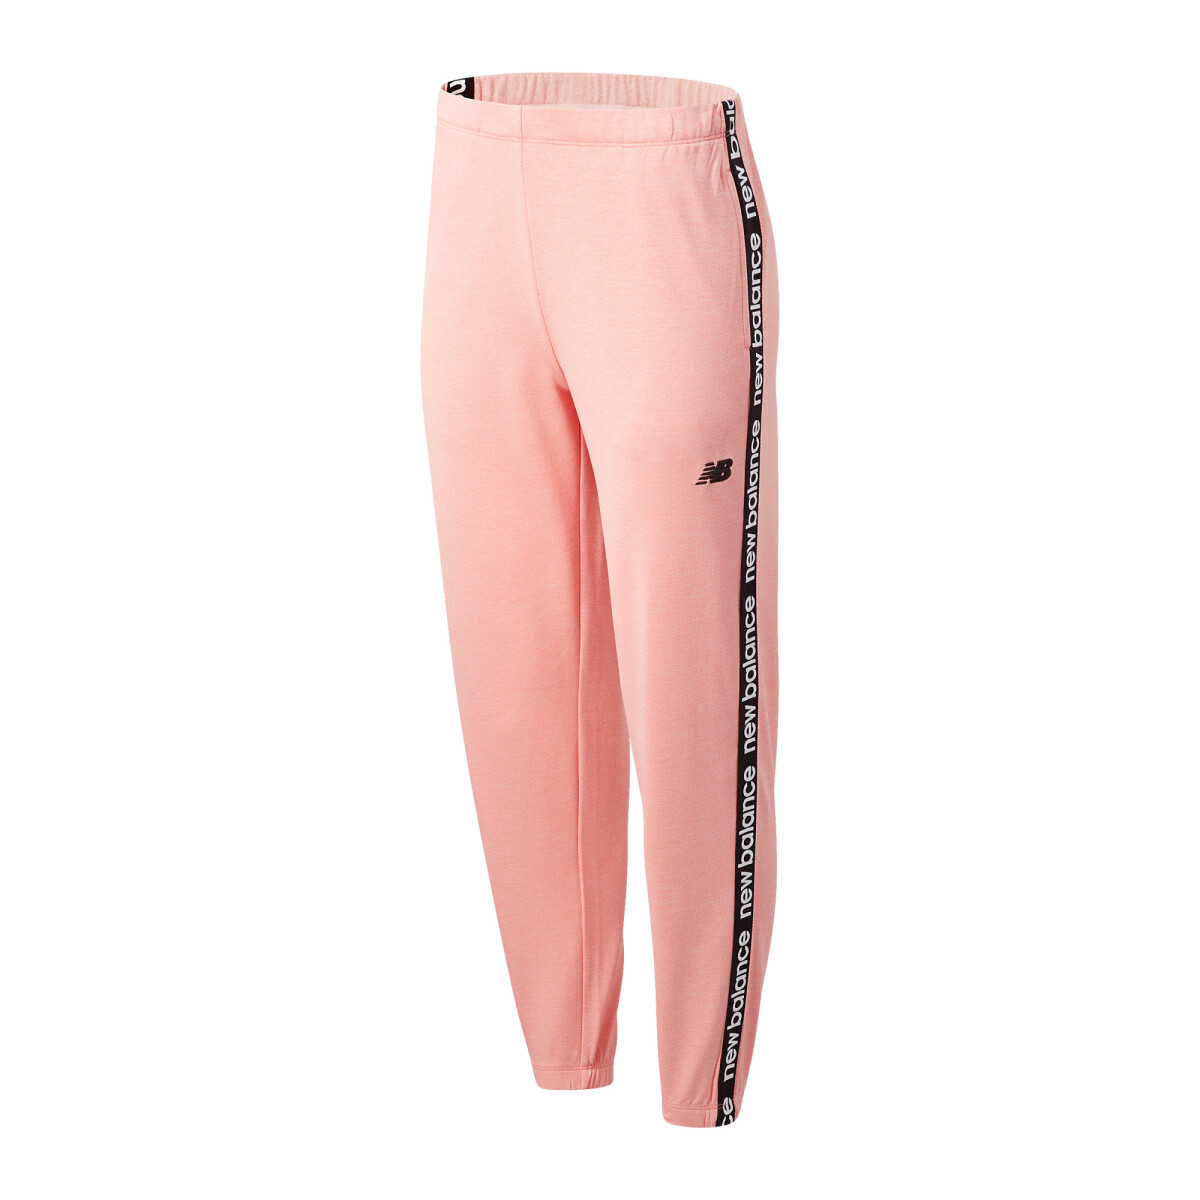 Pantalon New Balance Moda Dama Relentless Jogger - Color Único 